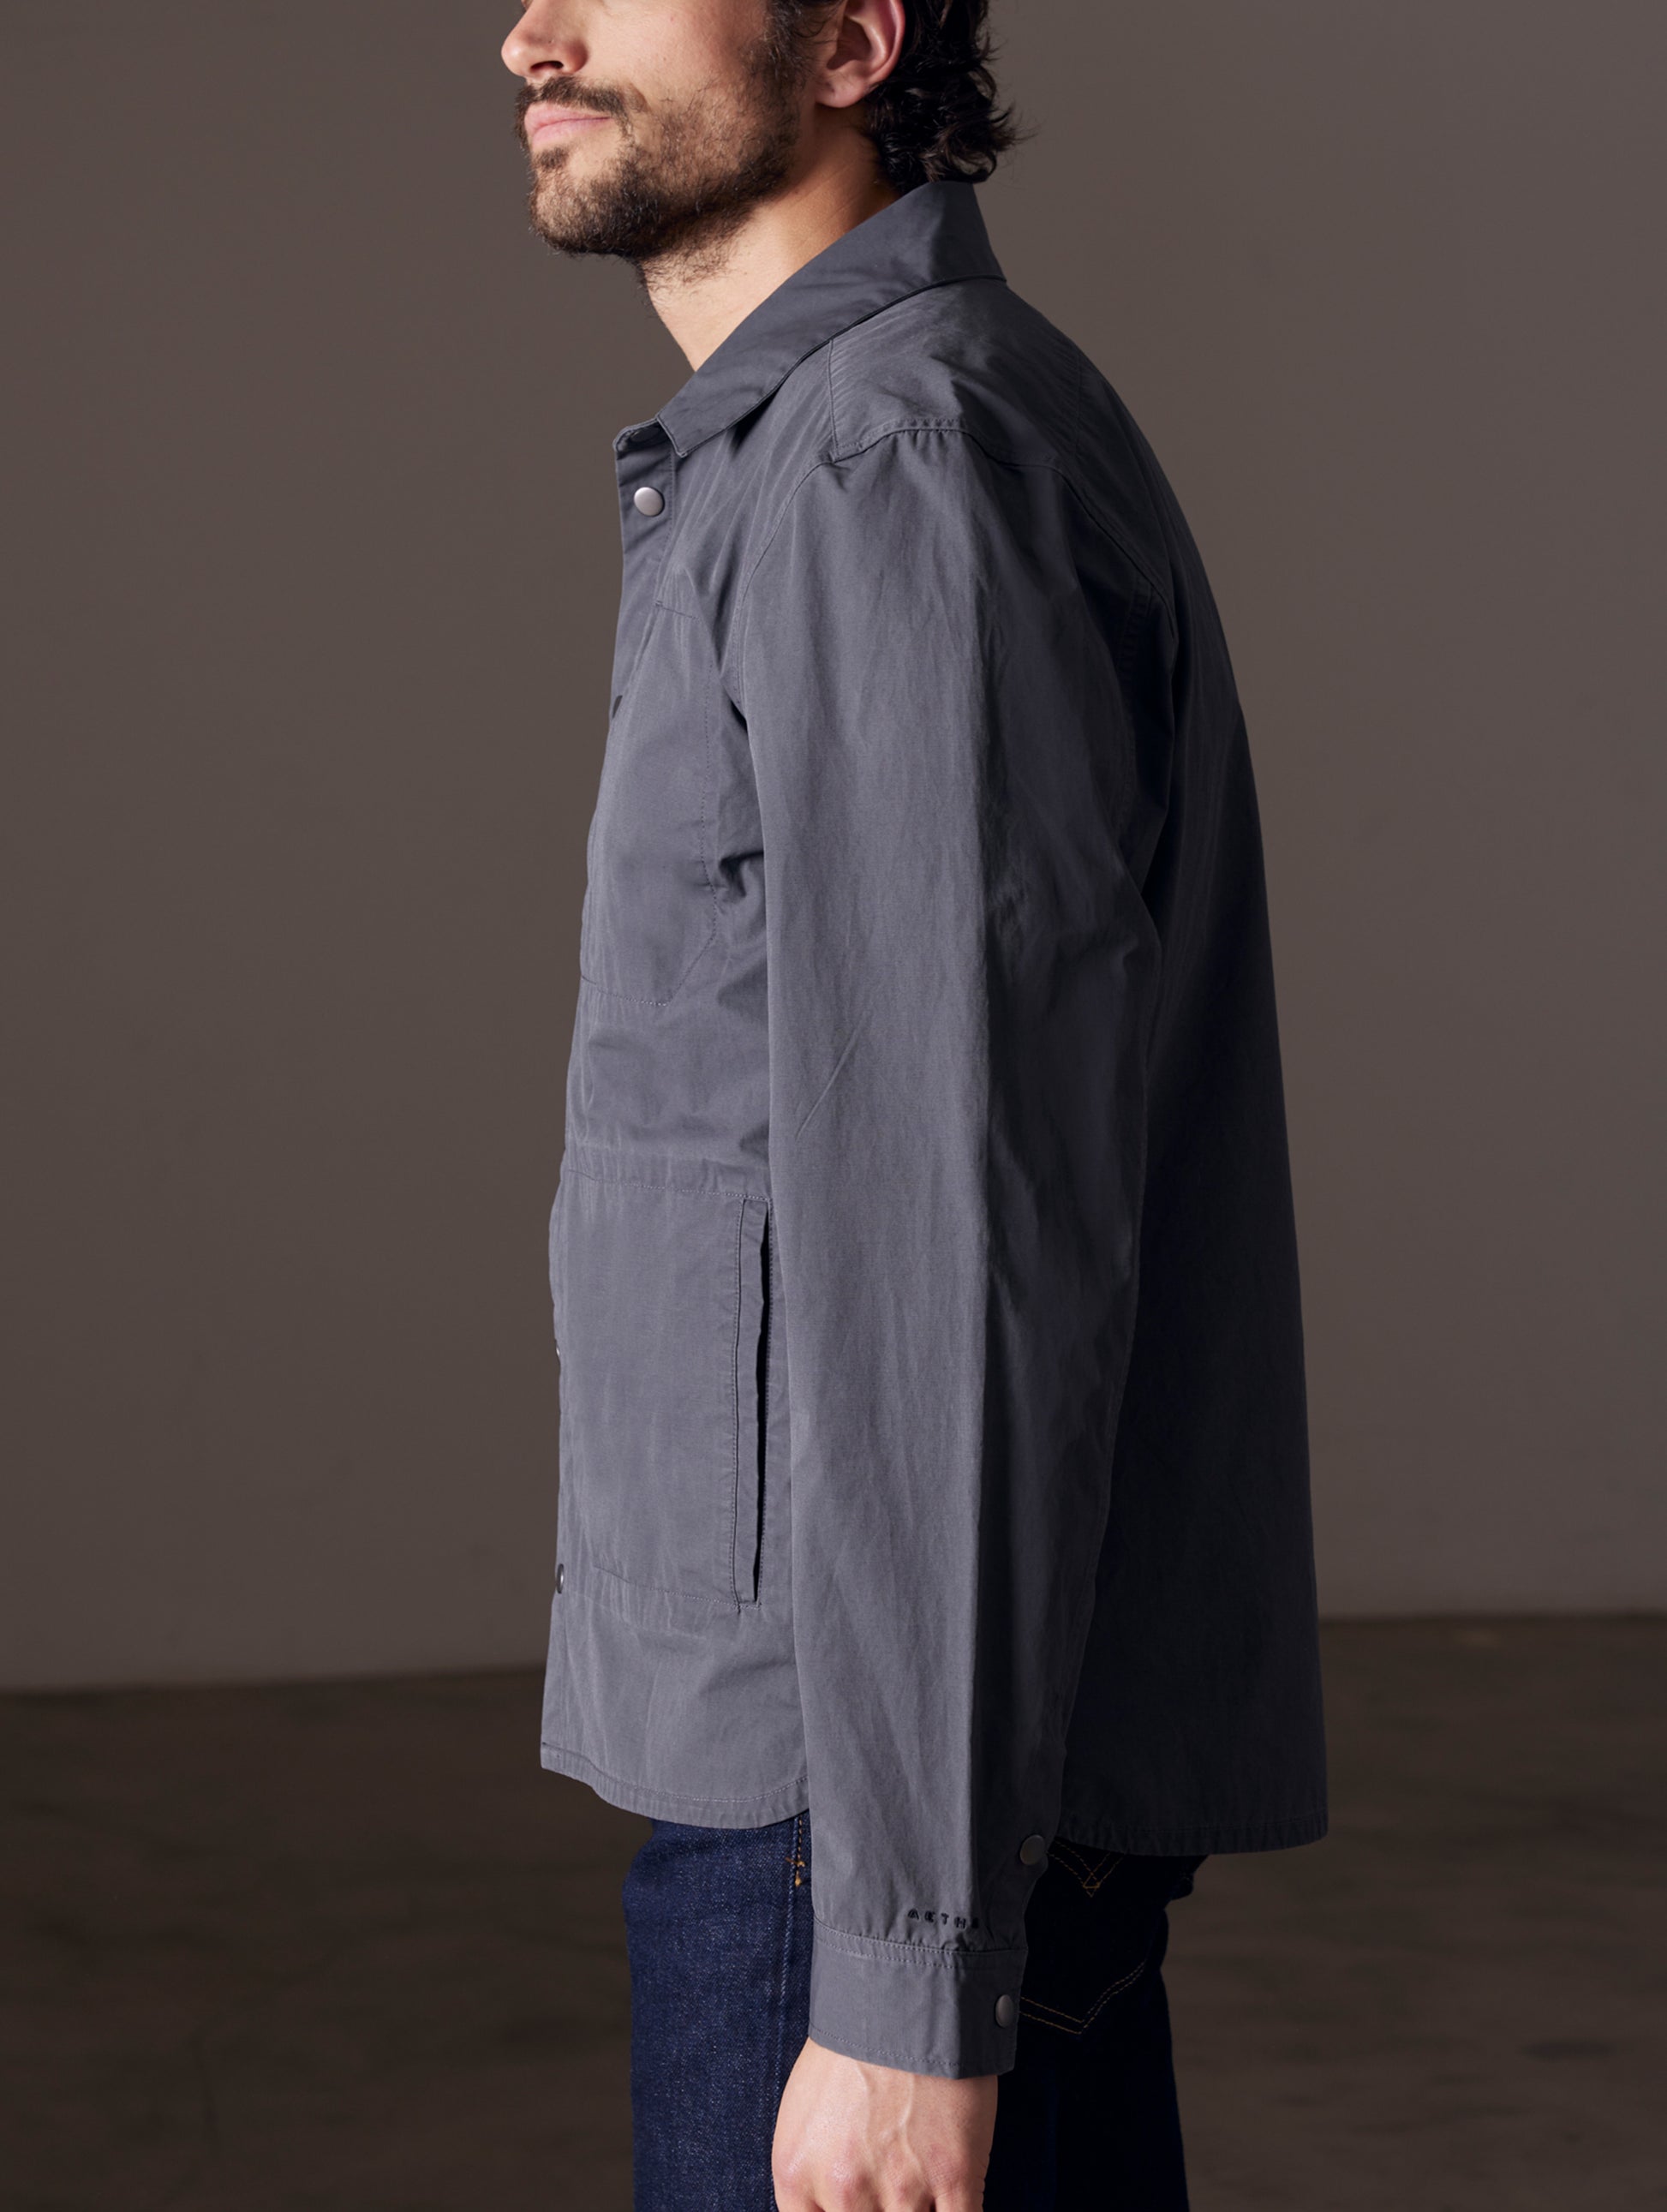 Side view of man wearing grey shirt jacket